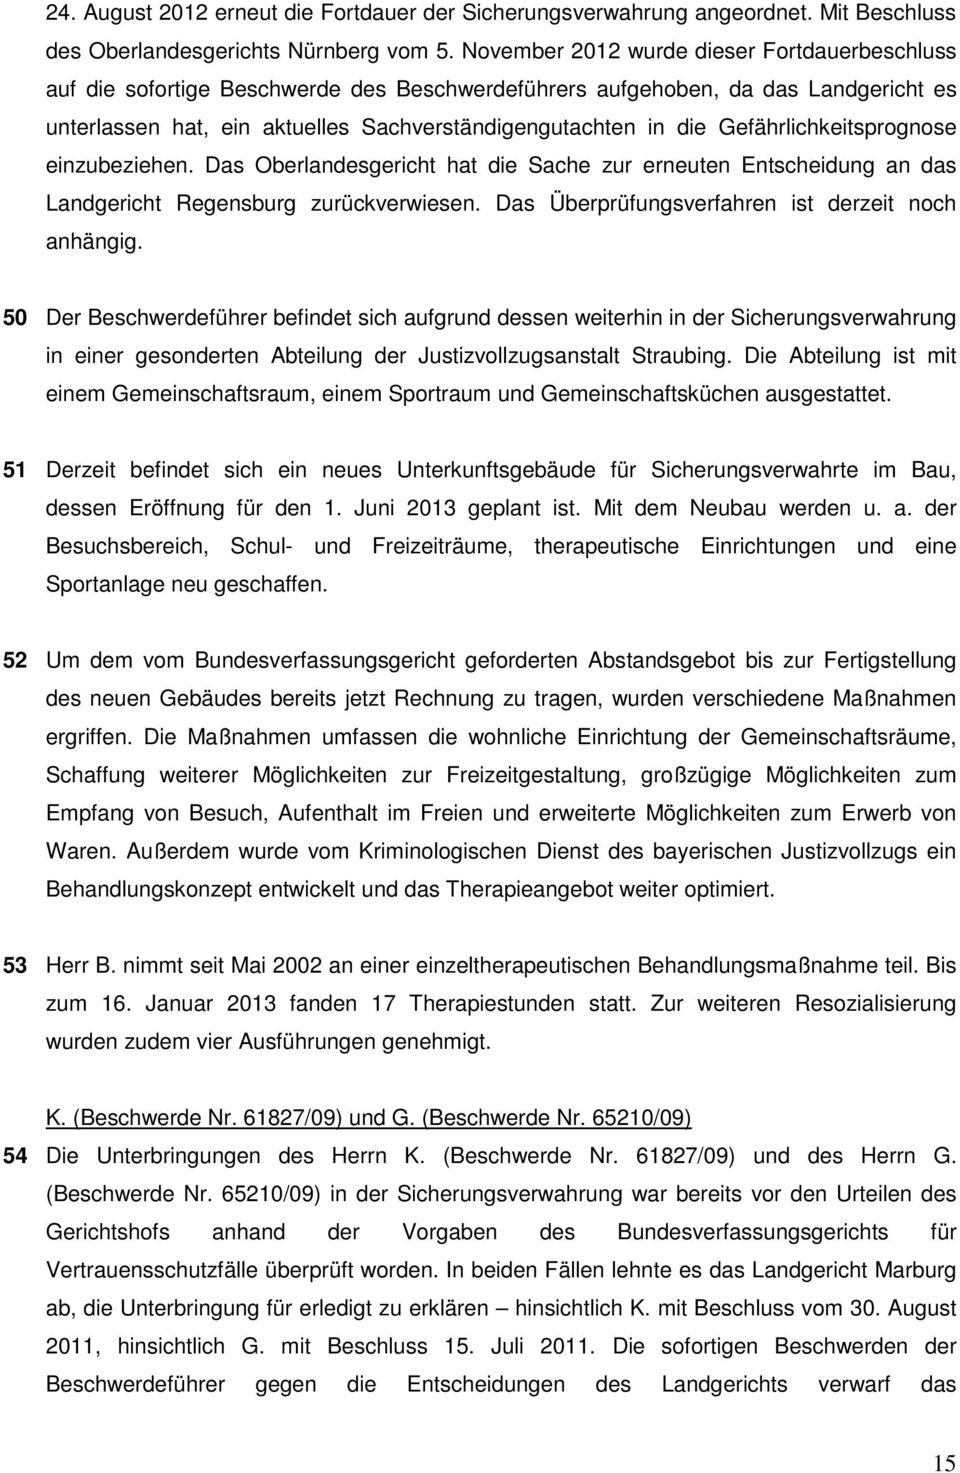 Gefährlichkeitsprognose einzubeziehen. Das Oberlandesgericht hat die Sache zur erneuten Entscheidung an das Landgericht Regensburg zurückverwiesen. Das Überprüfungsverfahren ist derzeit noch anhängig.